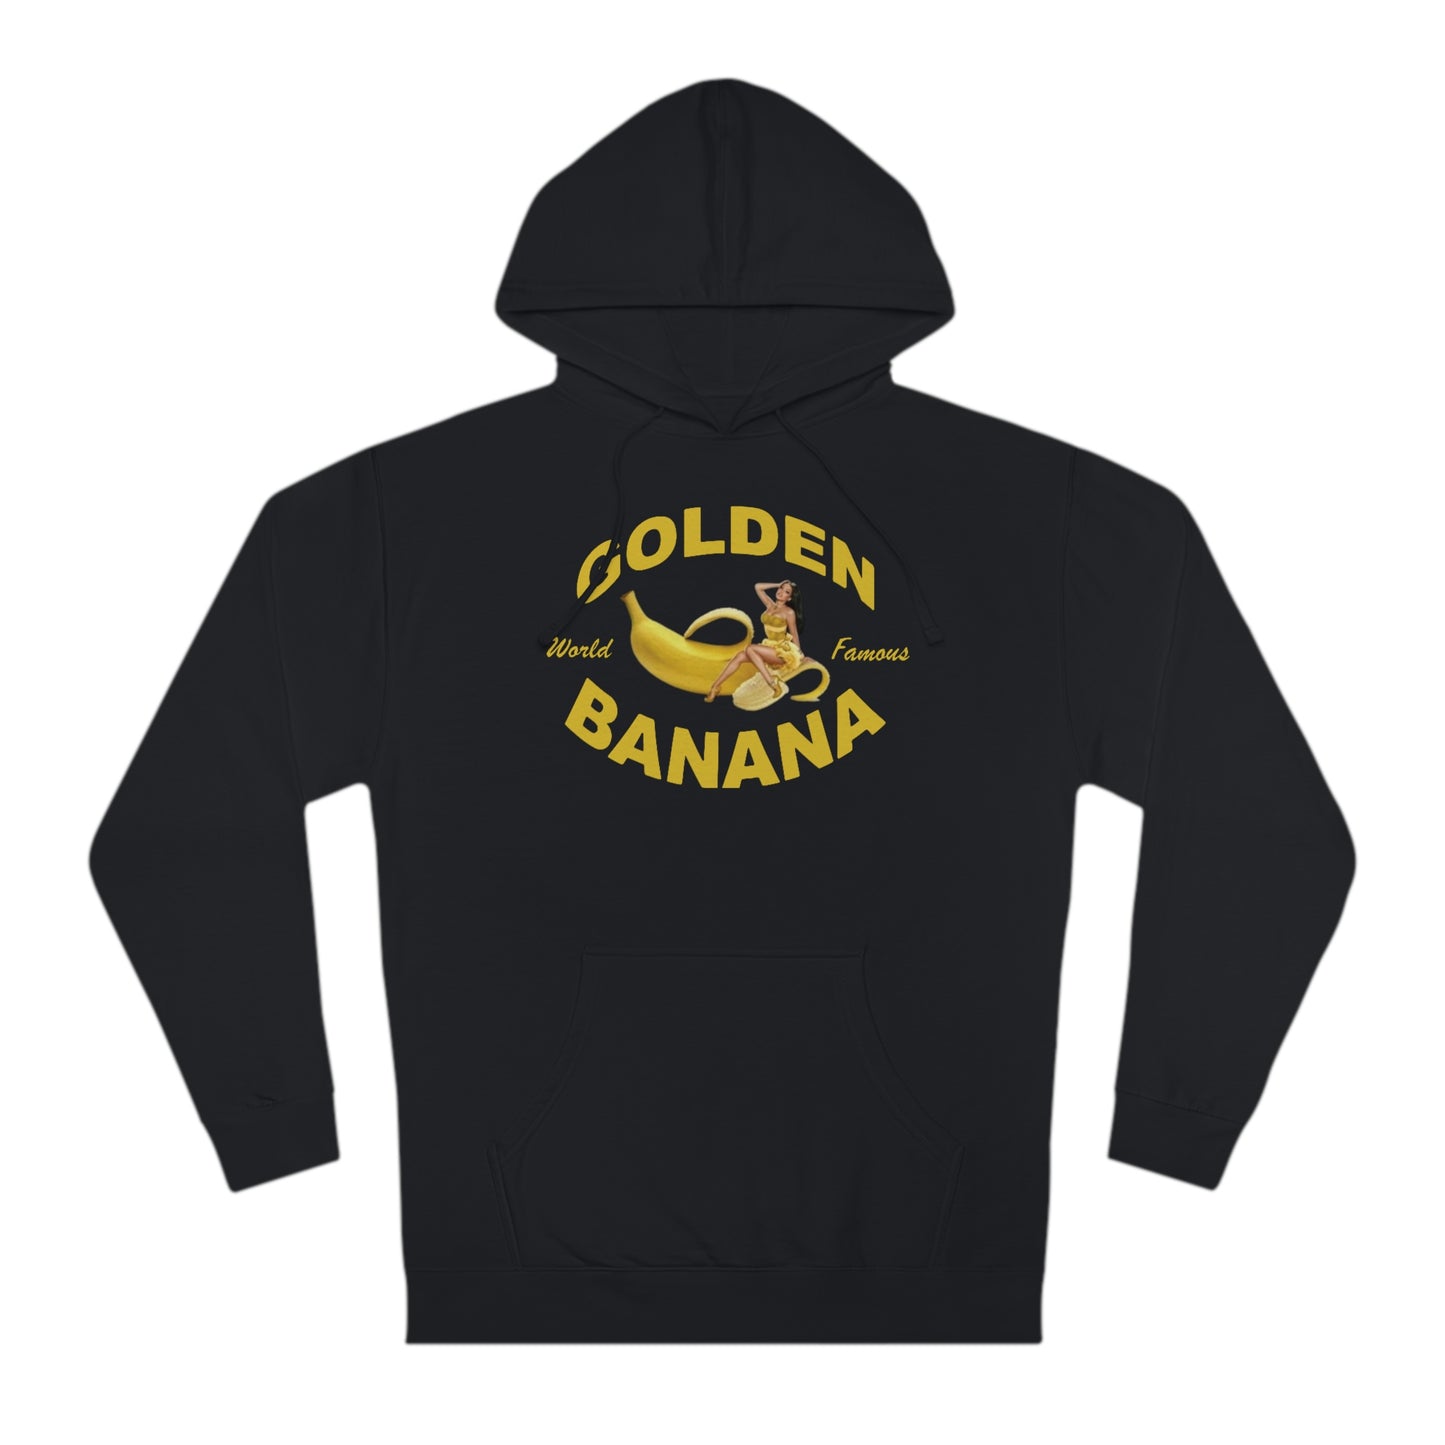 Golden Banana Unisex Hooded Sweatshirt